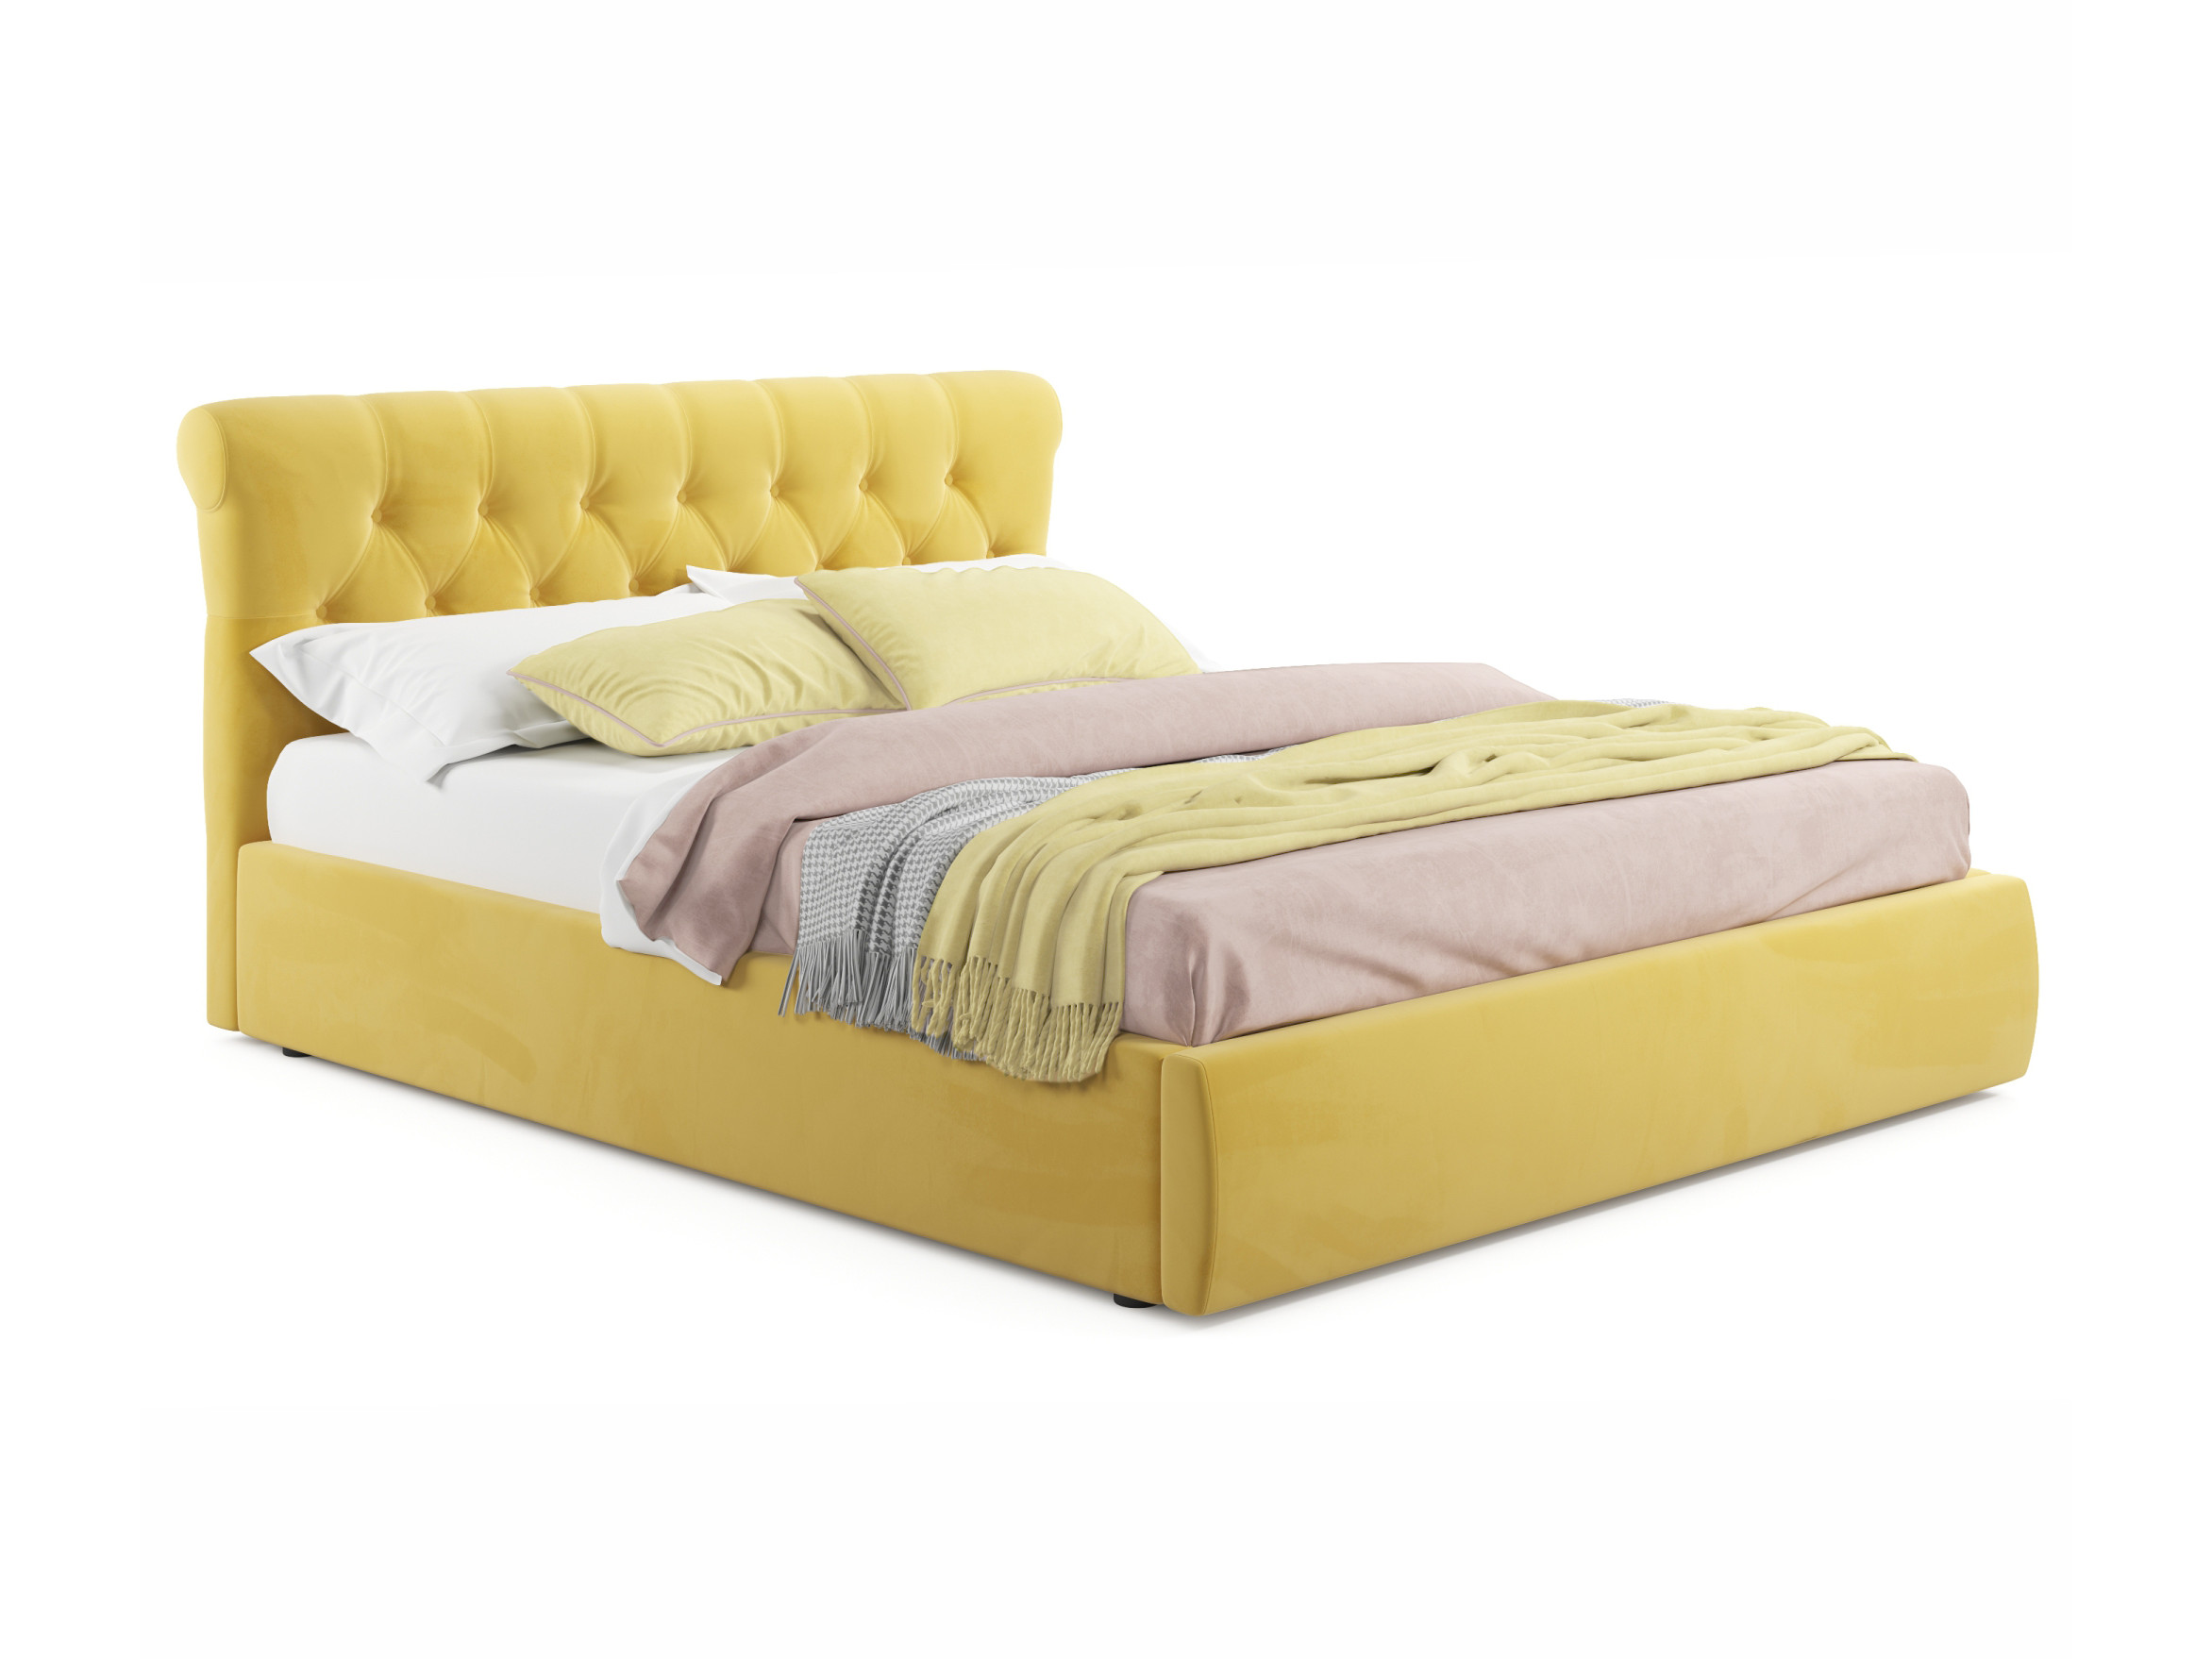 Мягкая кровать Ameli 1400 желтая с подъемным механизмом желтый, Желтый, Велюр, ДСП мягкая кровать ameli 1400 желтая с подъемным механизмом желтый желтый велюр дсп